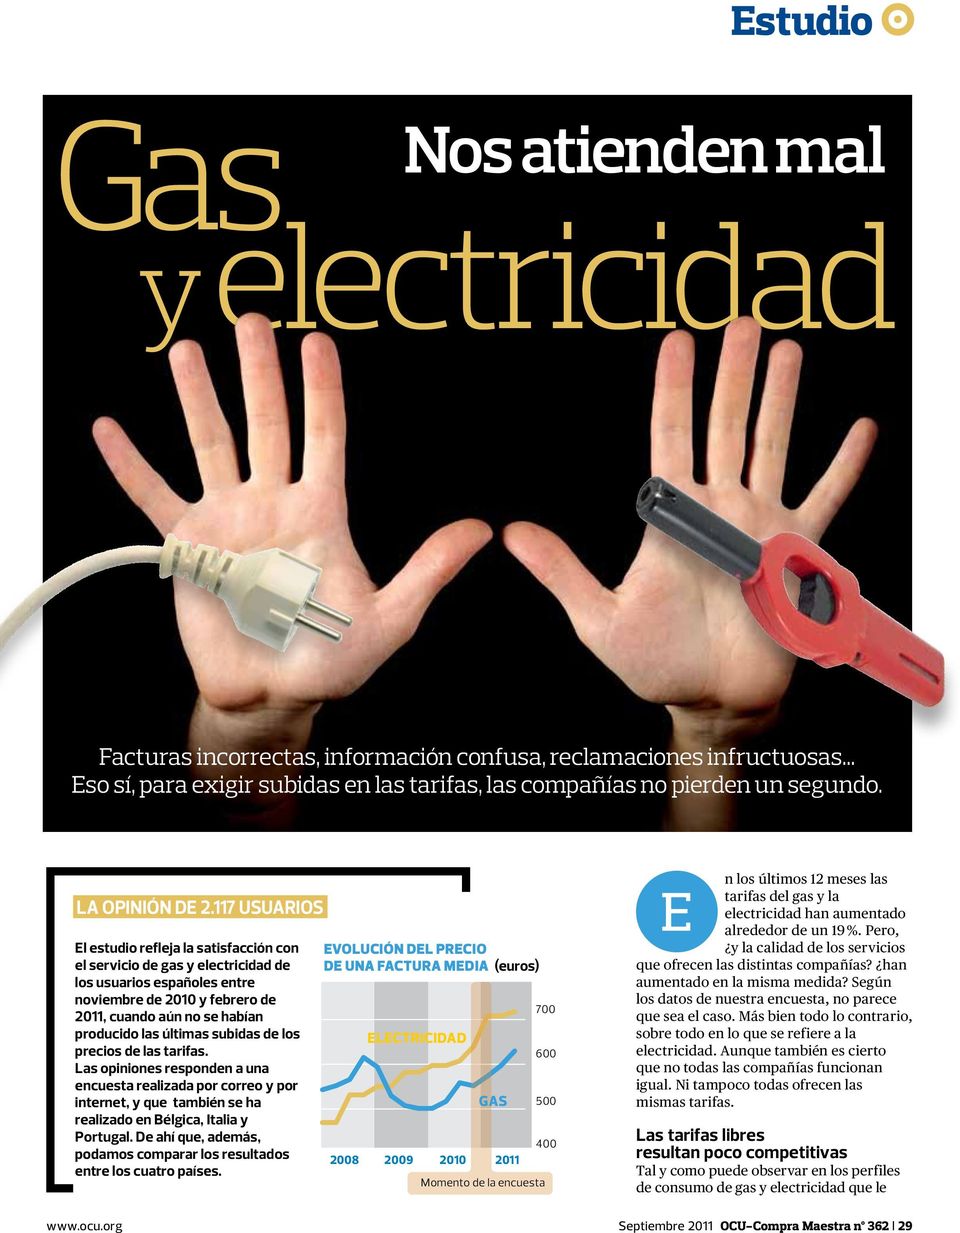 117 usuarios El estudio refleja la satisfacción con el servicio de gas y electricidad de los usuarios españoles entre noviembre de 2010 y febrero de 2011, cuando aún no se habían producido las